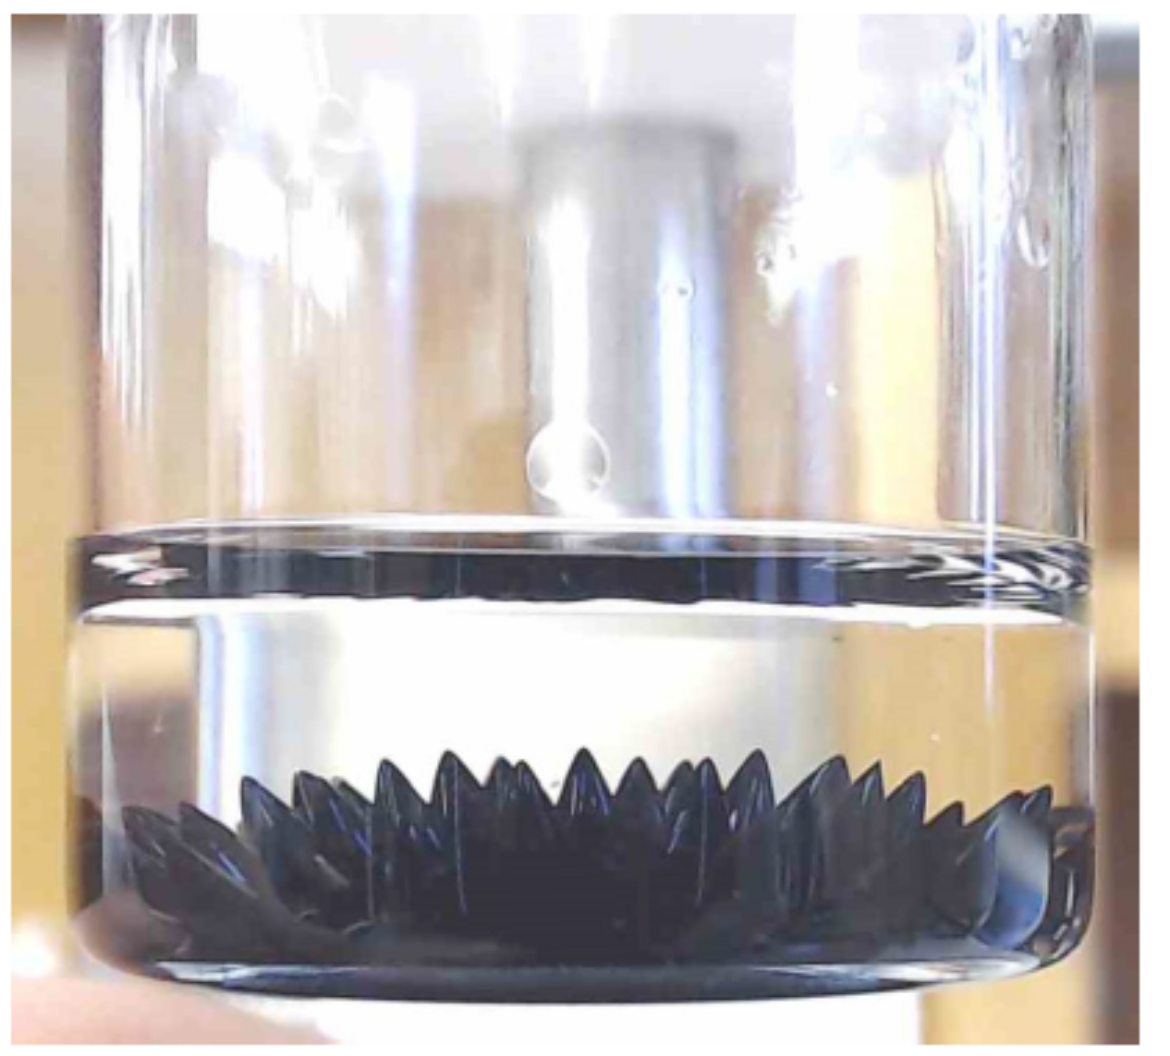 Ferrofluide unter Magnetfeldeinfluss in einem Glas sichtbar. Sie sind schwarz und zeigen spitz nach oben wie ein Igel